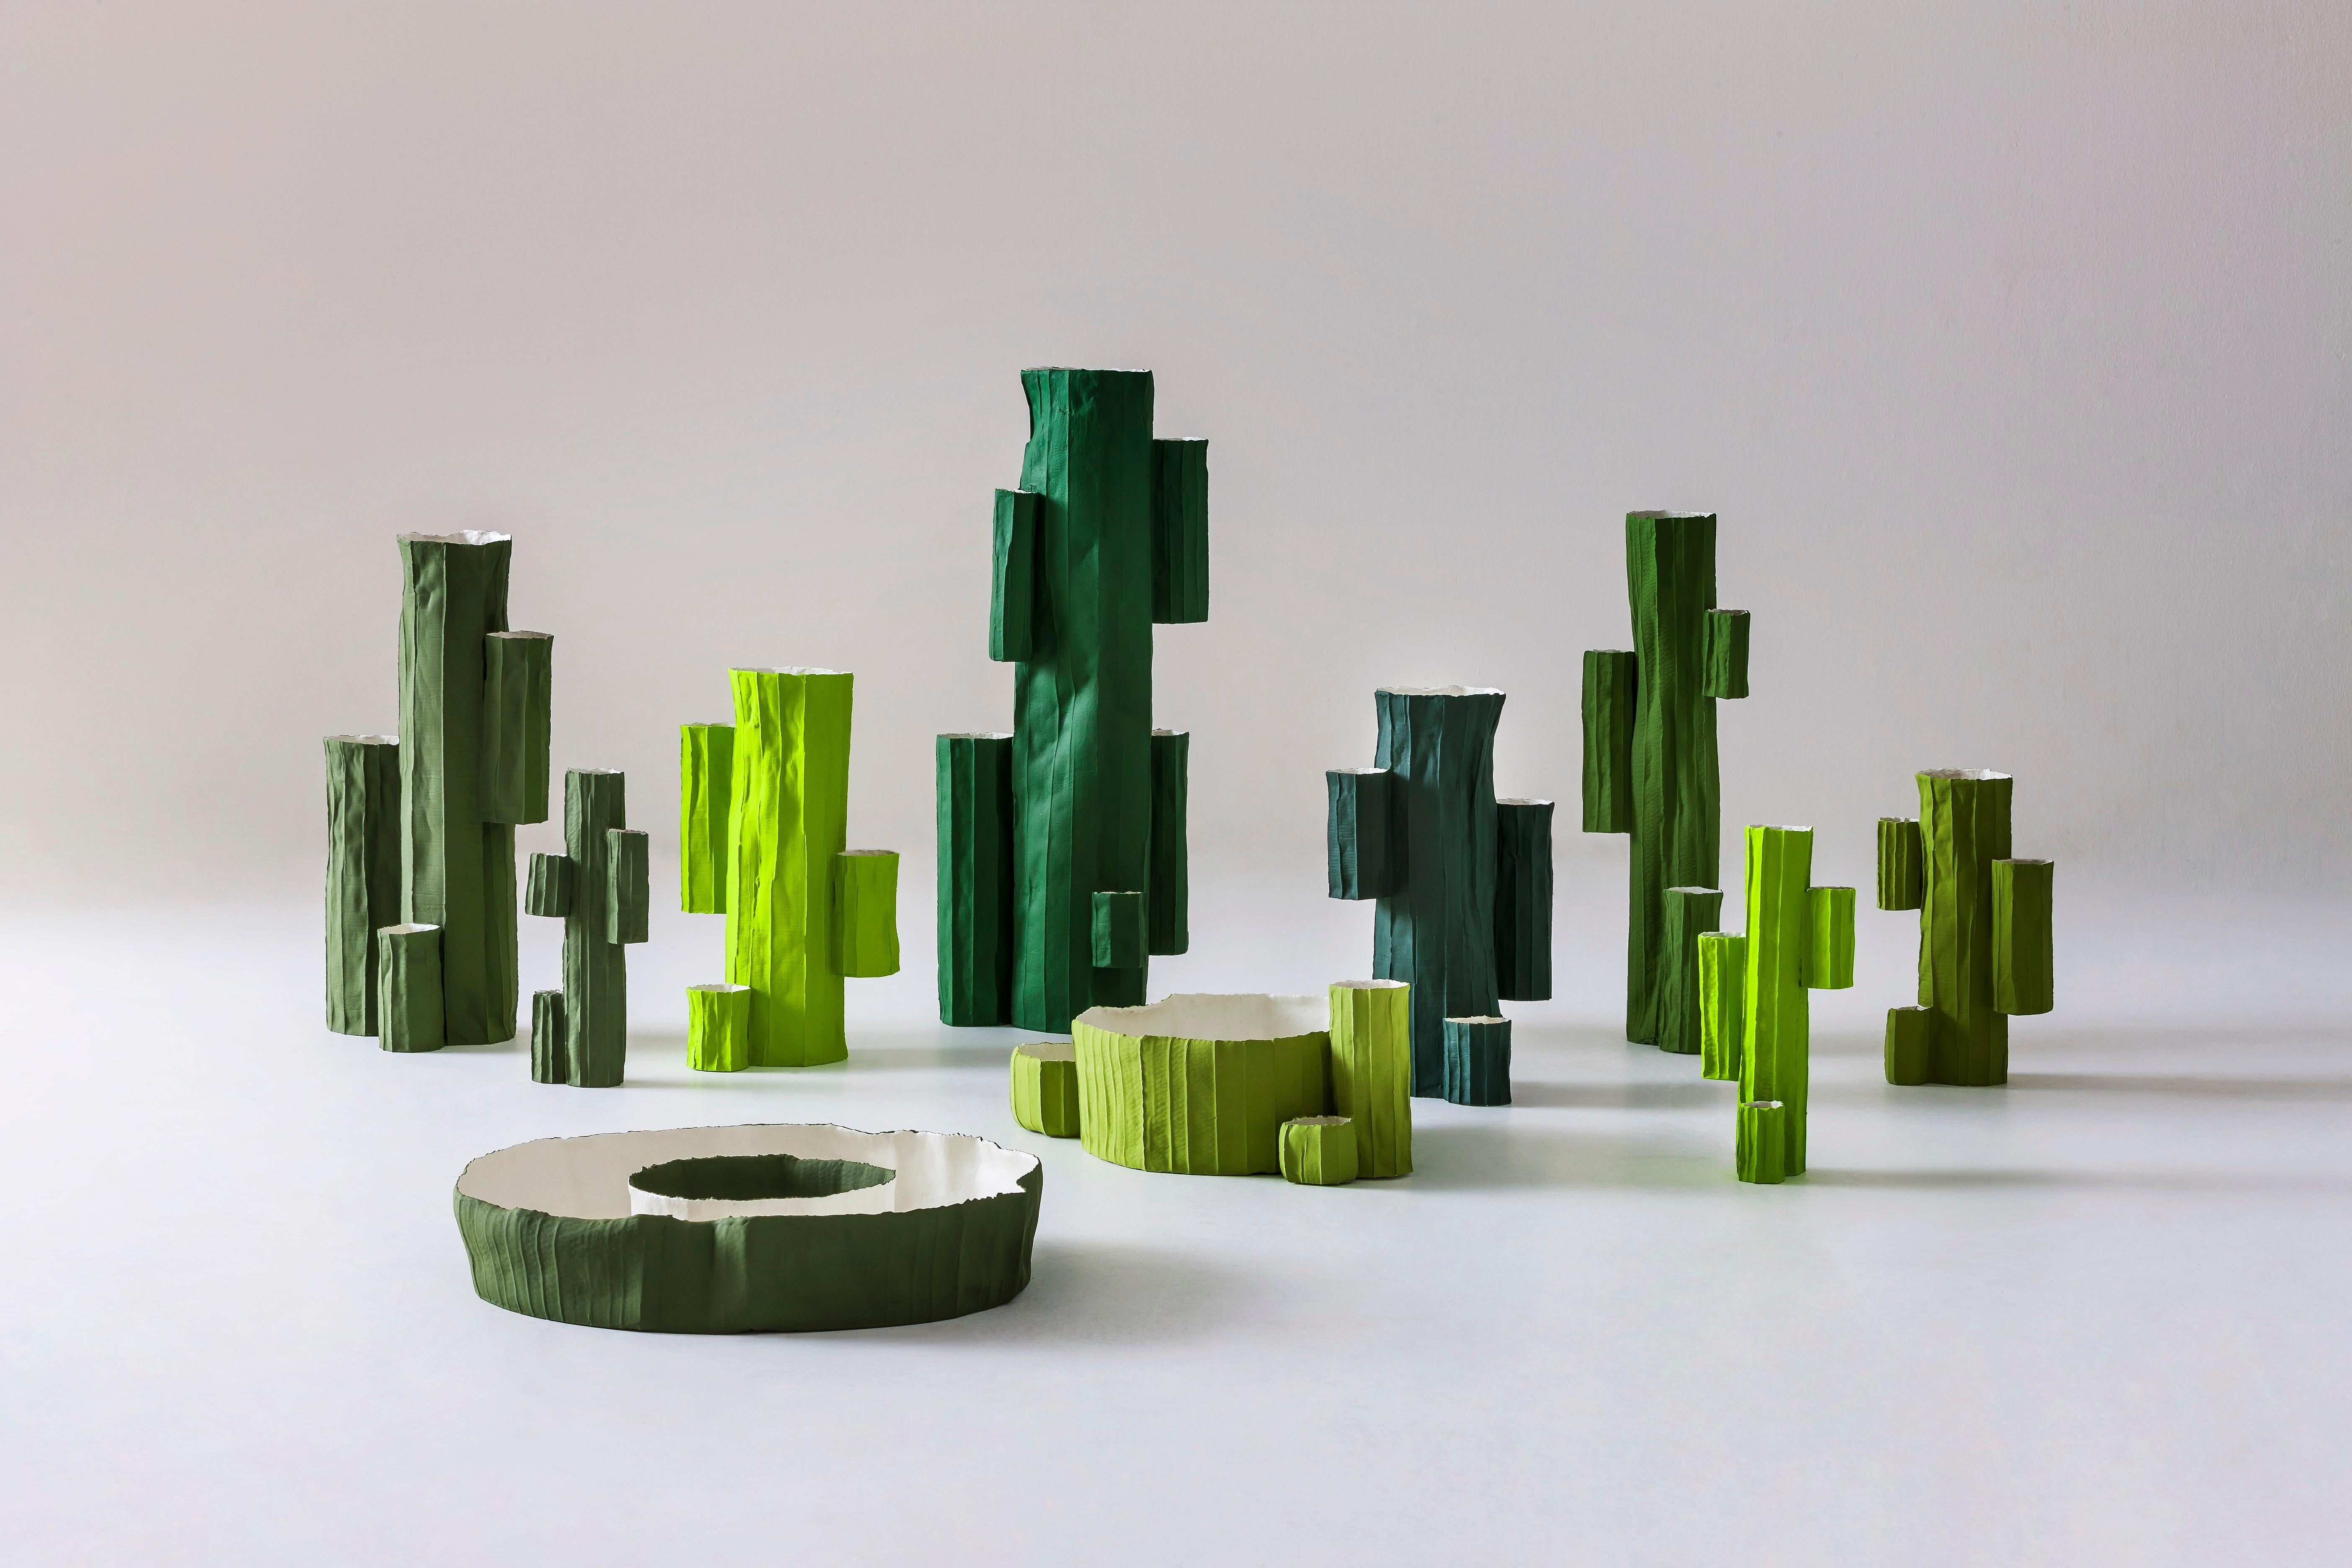 La série d'objets décoratifs Cactus de la céramiste italienne Paola Paronetto s'inspire de la beauté et de l'harmonie de la nature. Fabriqué à la main en argile à papier, un matériau spécial obtenu en mélangeant de la pulpe de papier et des